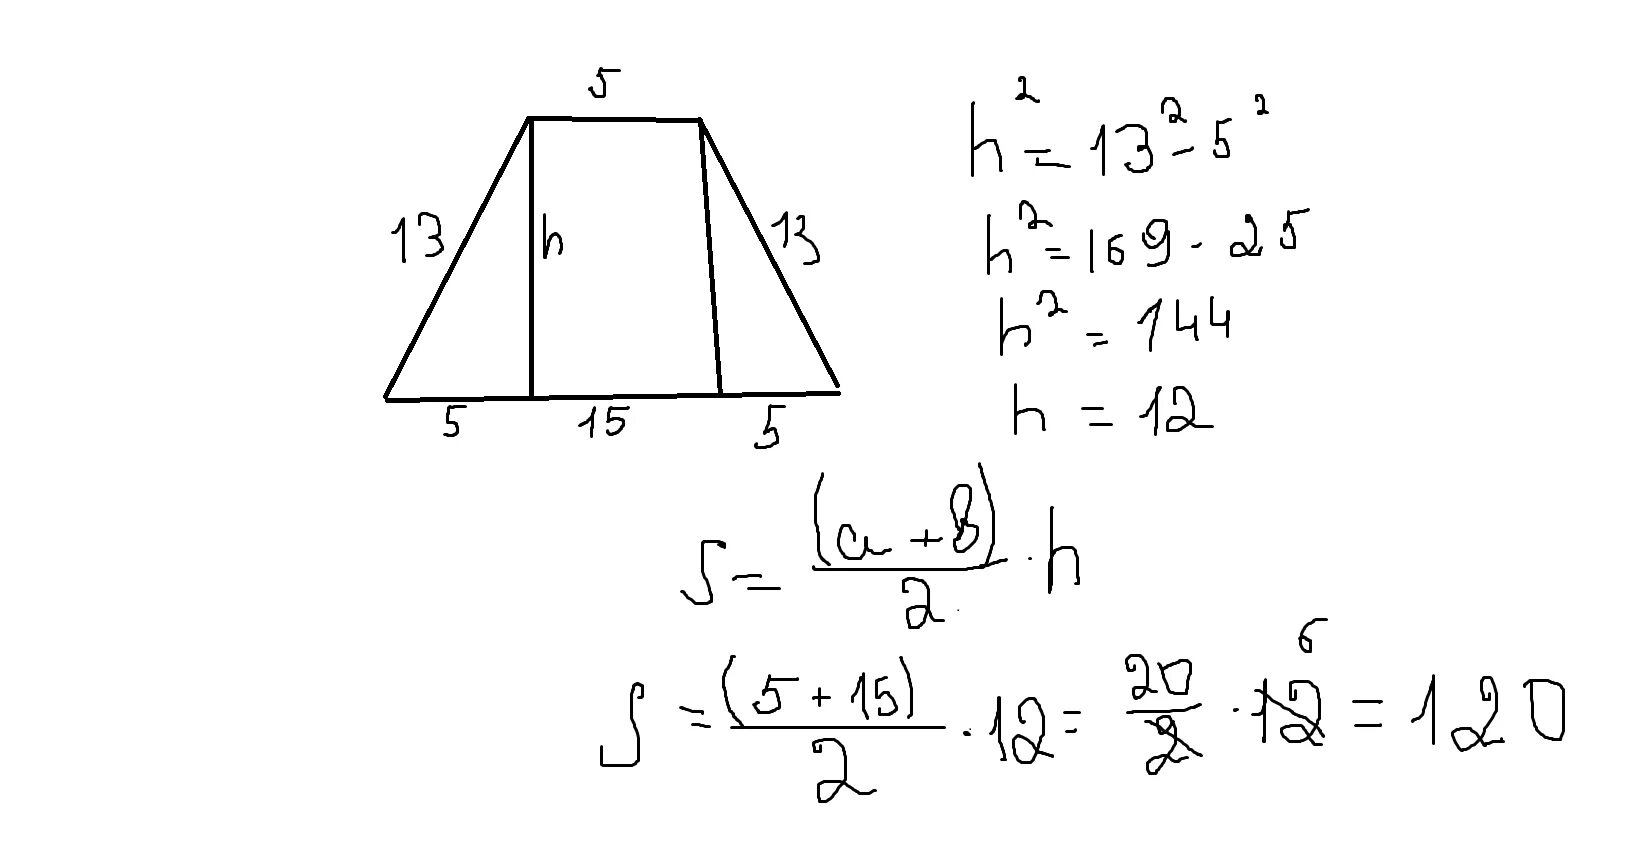 Основания равнобедренной трапеции равны 15 и 29. Высота равнобедренной трапеции формула. Площадь объемной трапеции. Формула обемно трапеции. Основание равнобедренной трапеции формула.